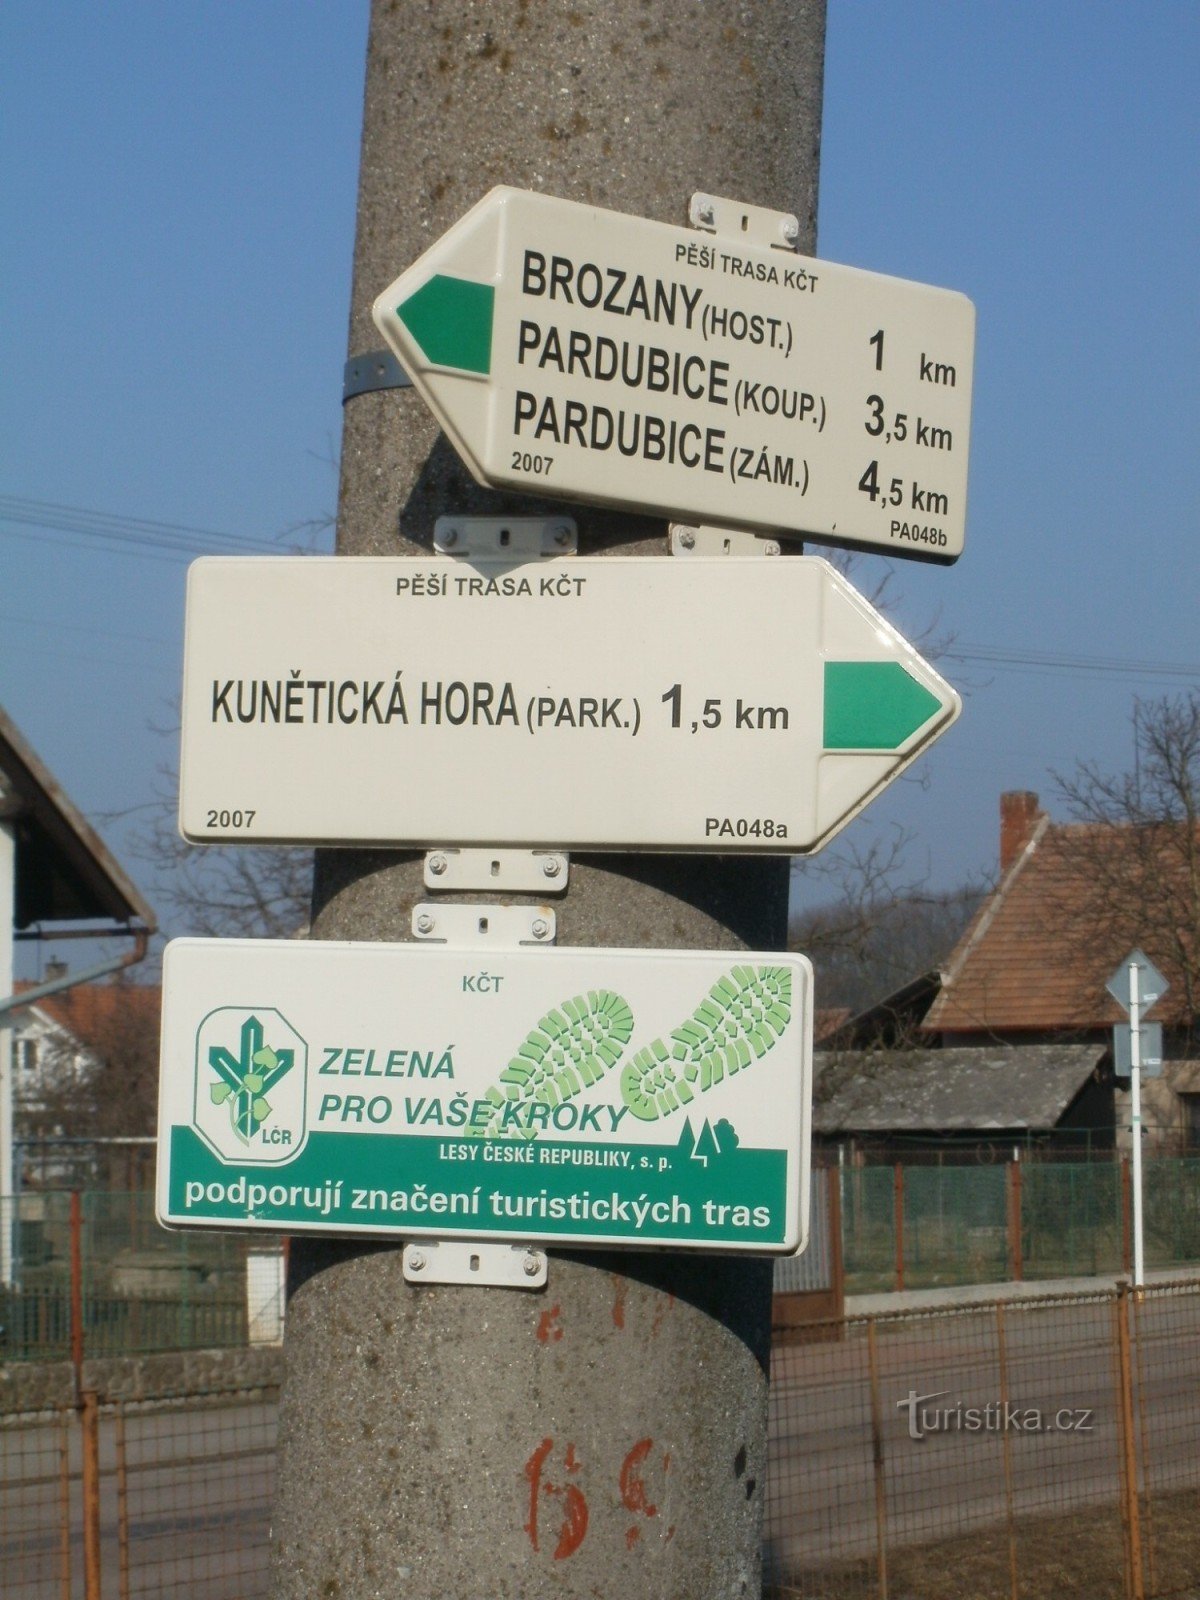 het toeristische kruispunt van Ráby